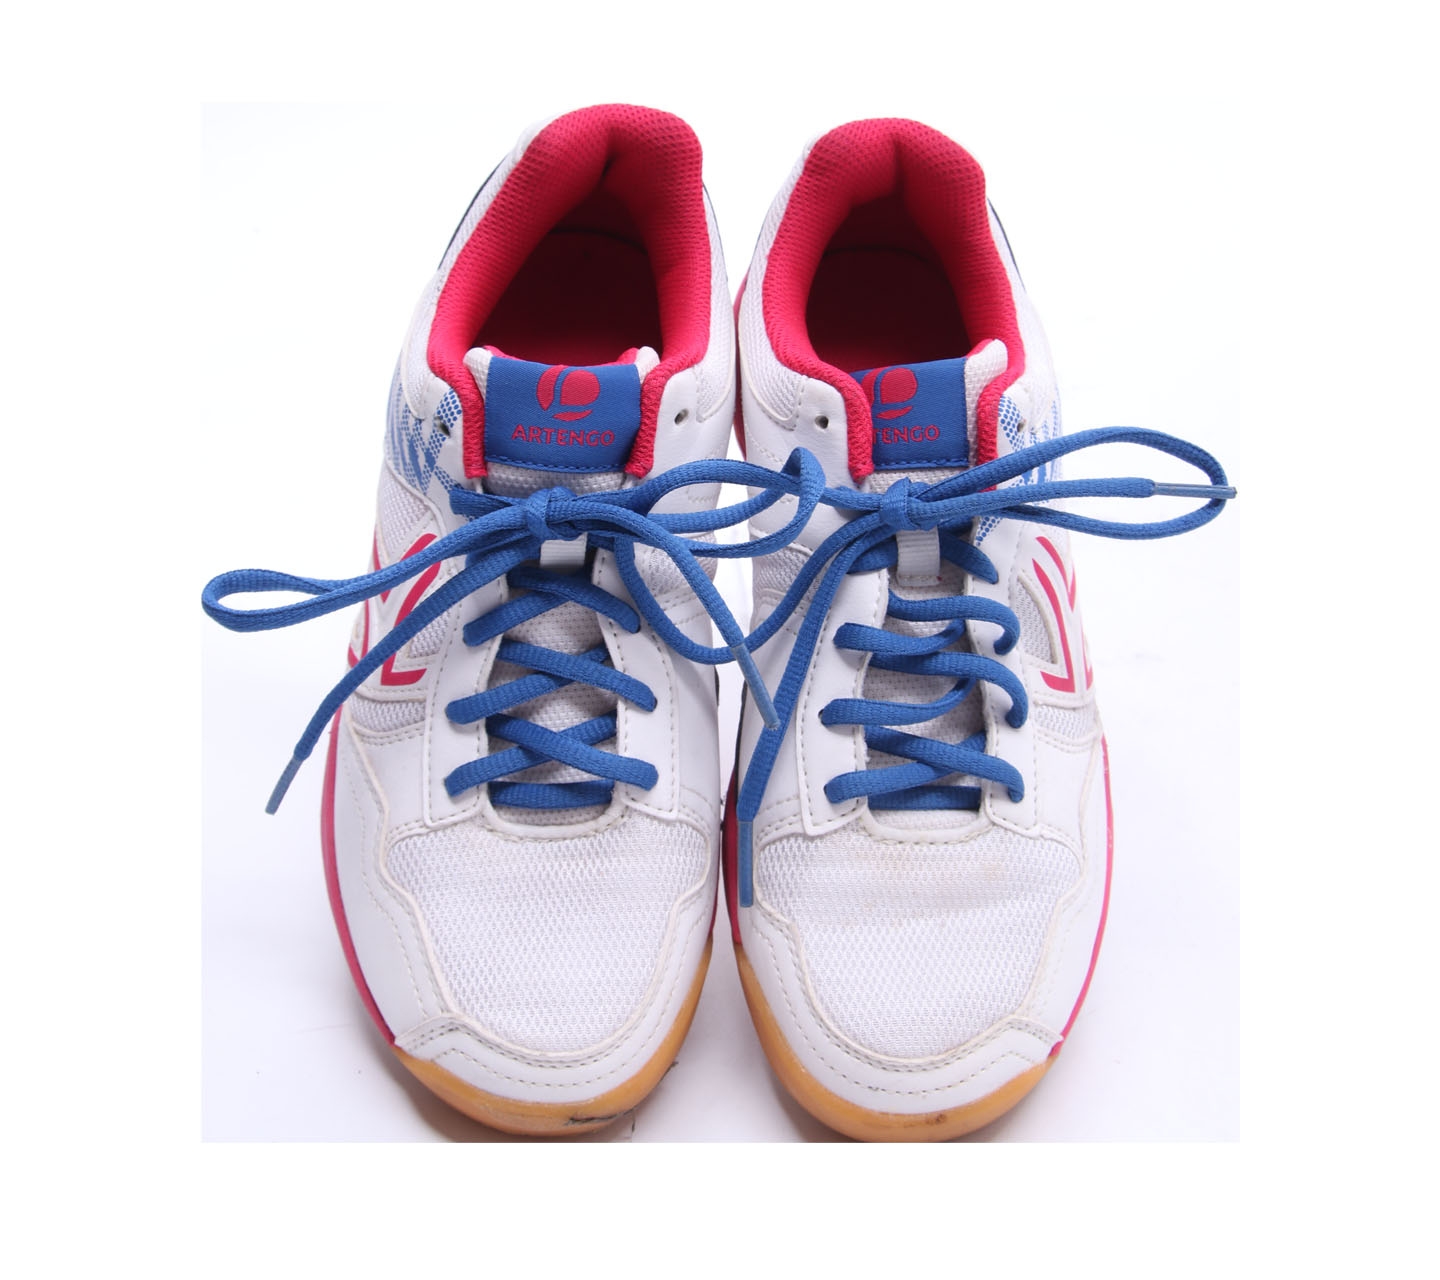 Decathlon Multicolor Tennis Shoes Sneakers